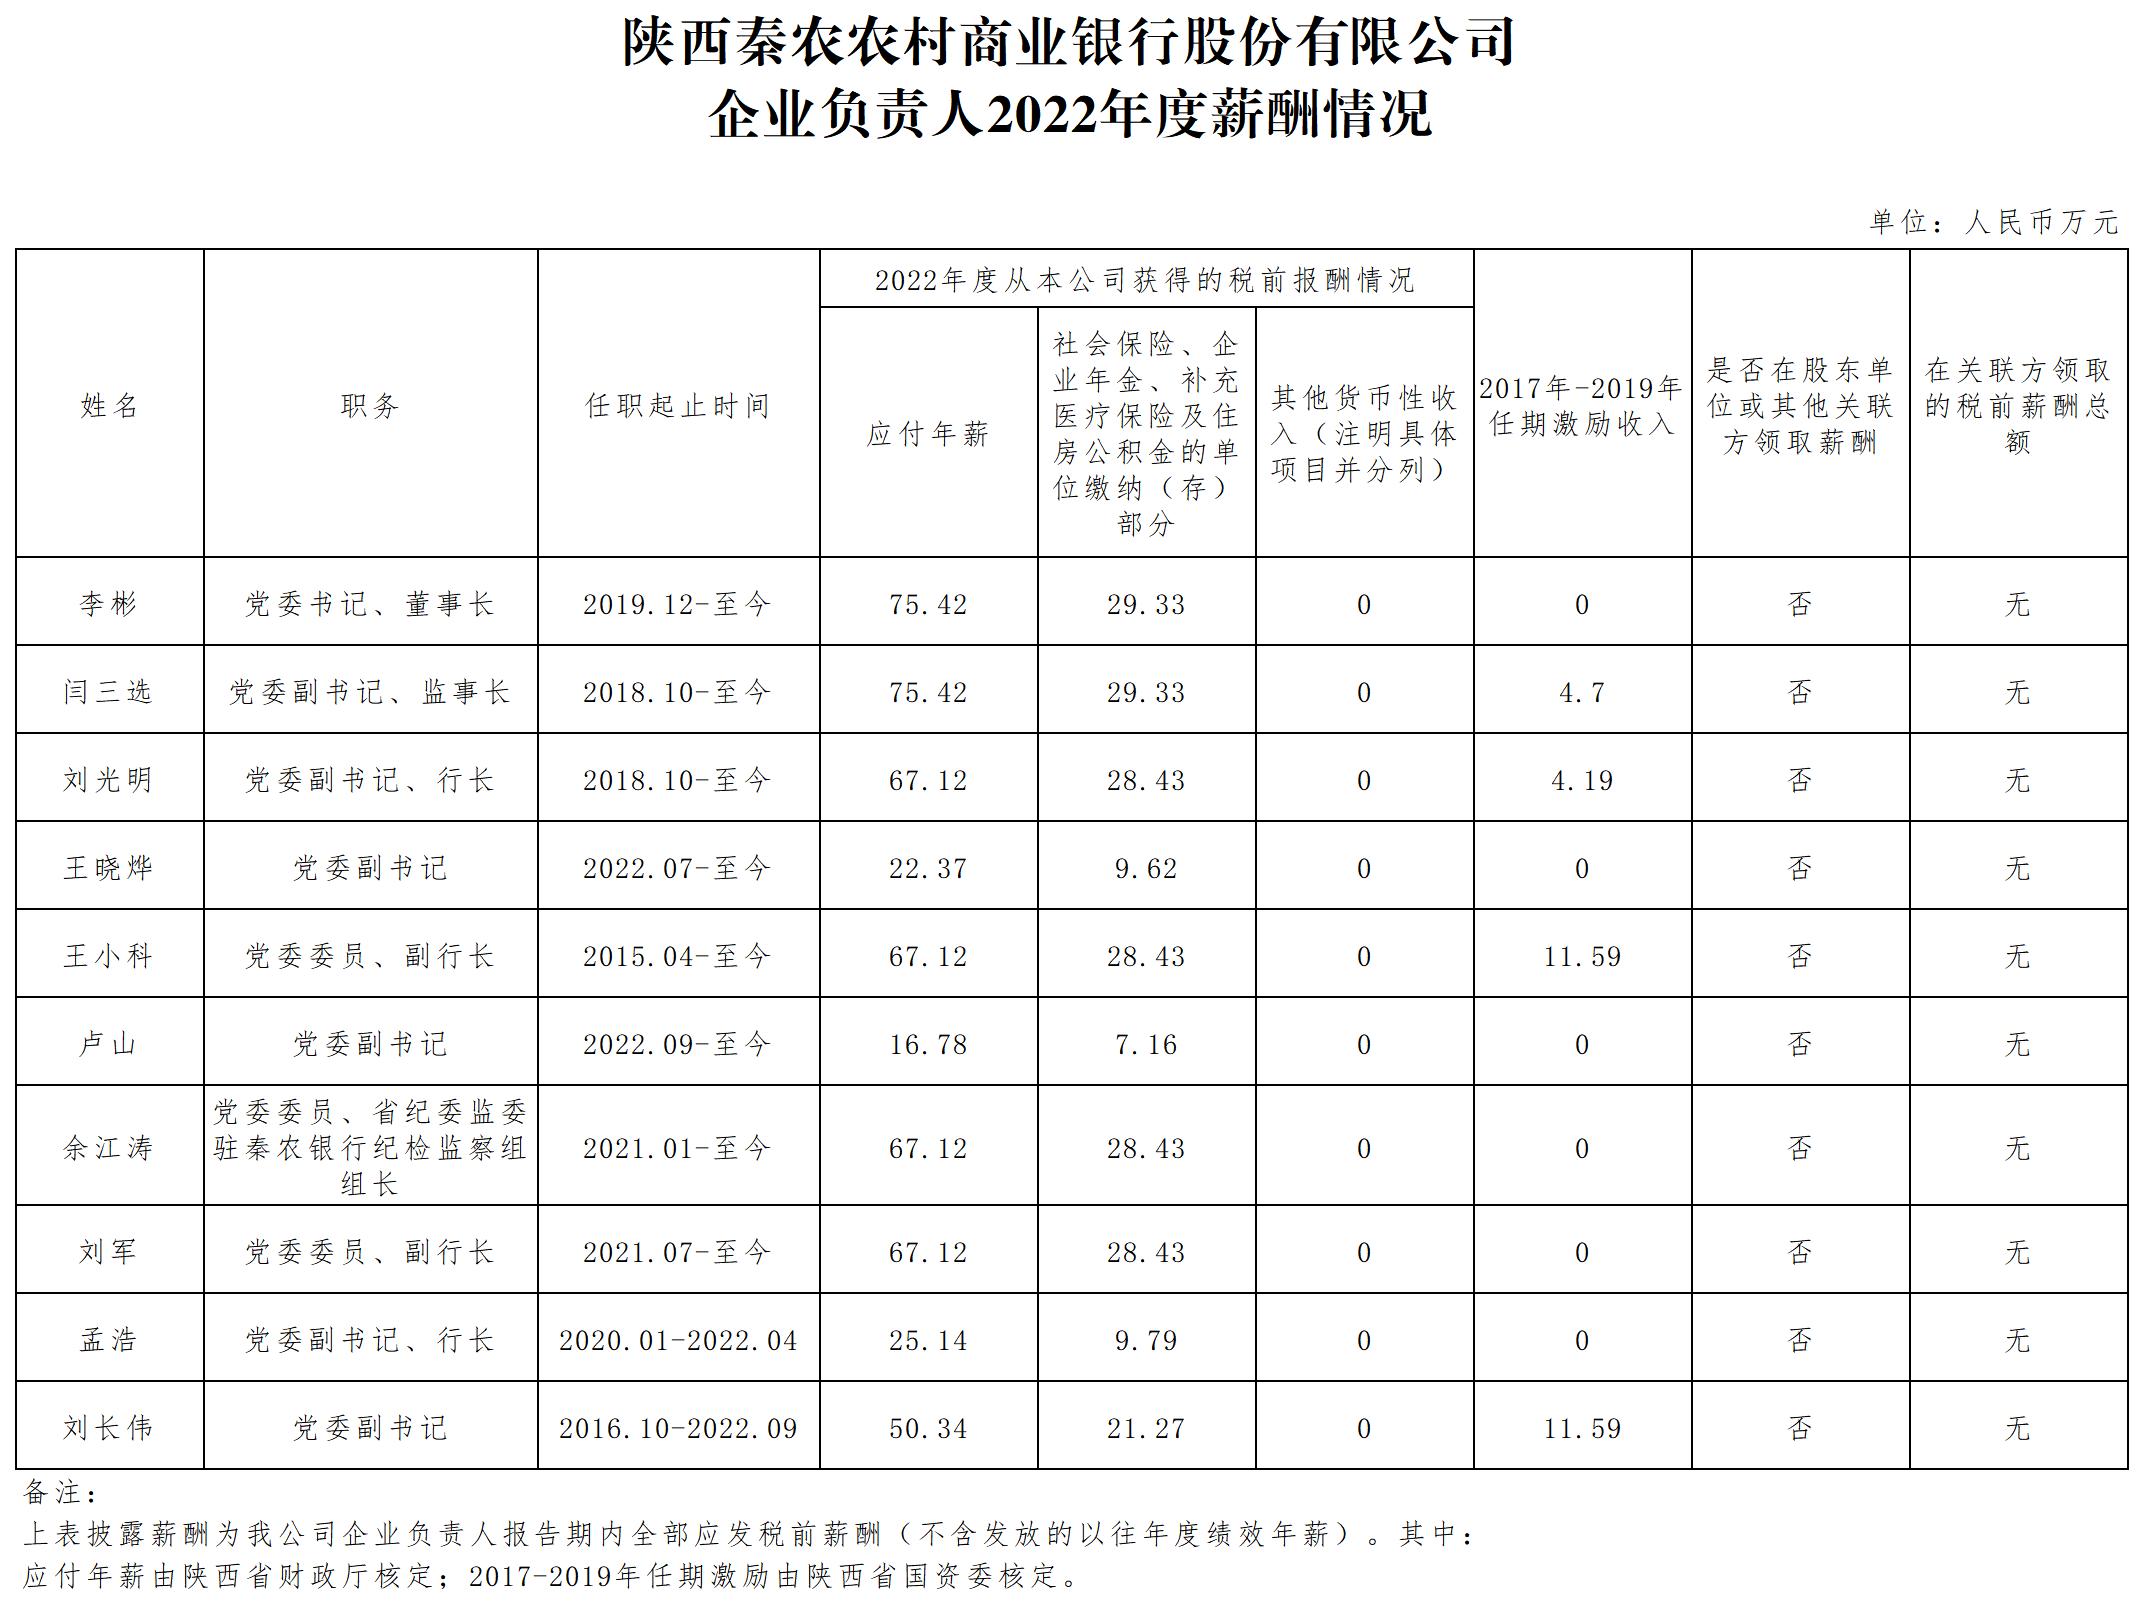 省属企业负责人薪酬信息披露样式12.15_Sheet1(2).jpg